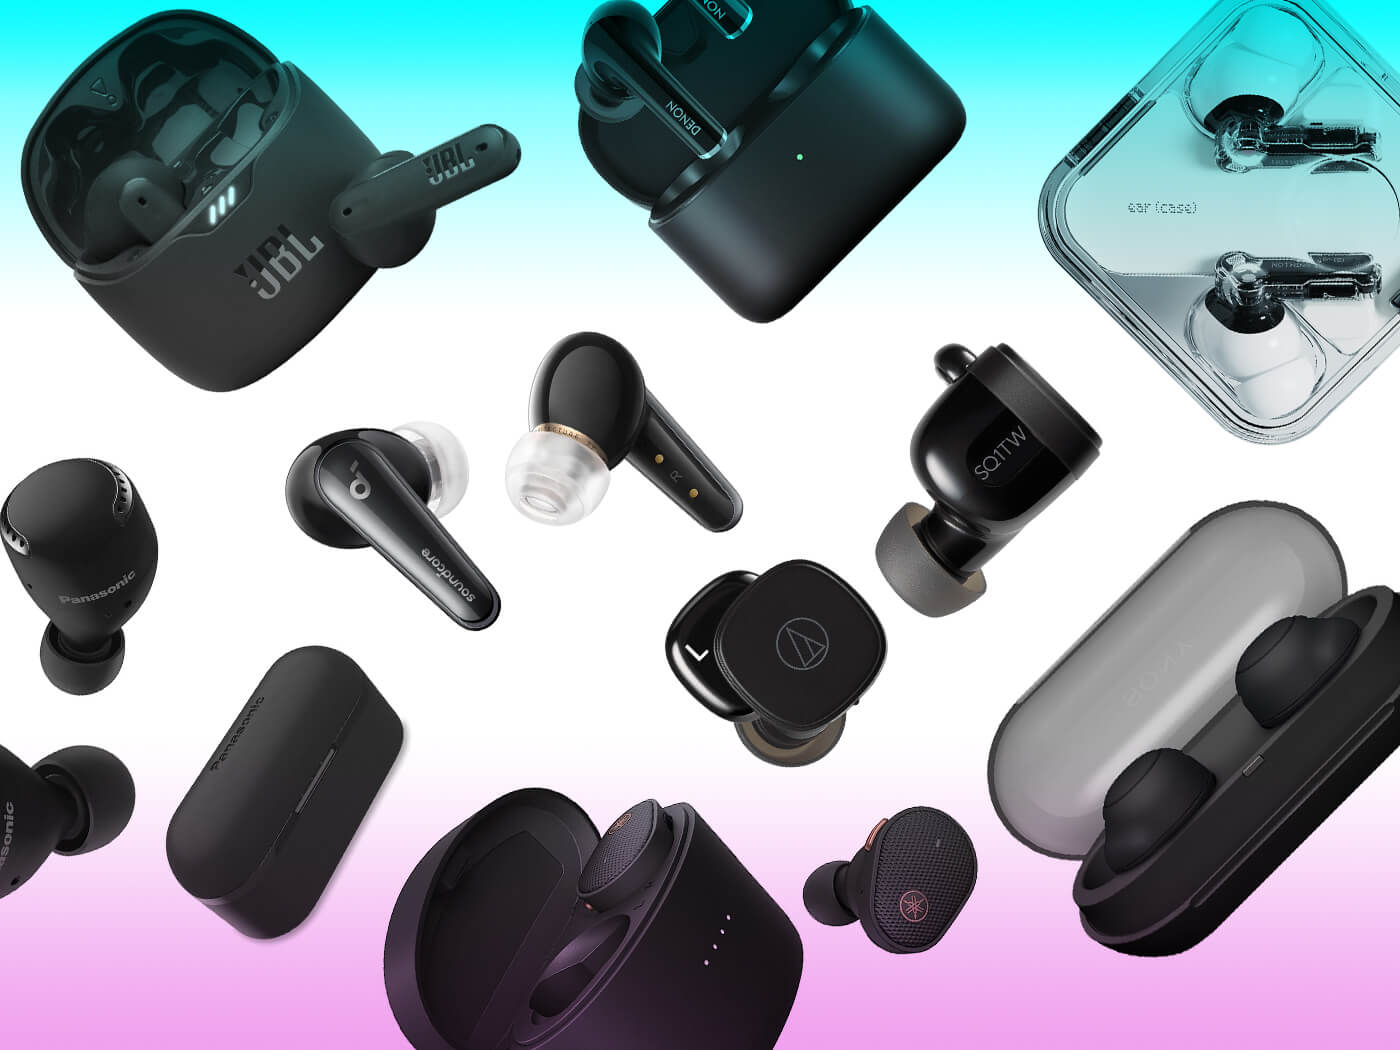 Best all-purpose wireless earbuds under £150